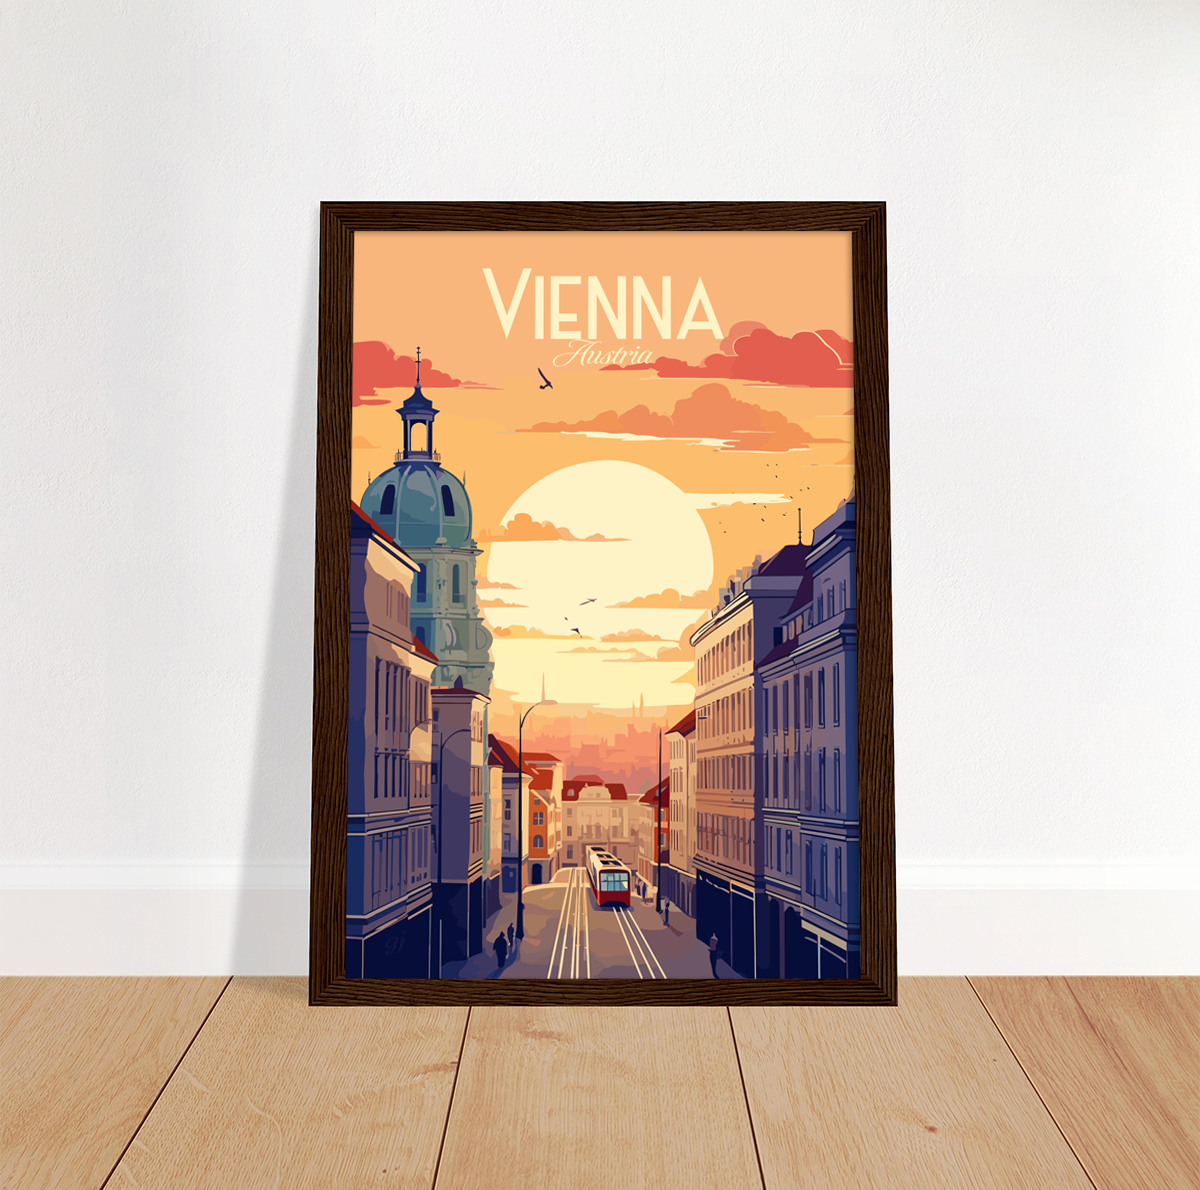 Vienna poster by bon voyage design